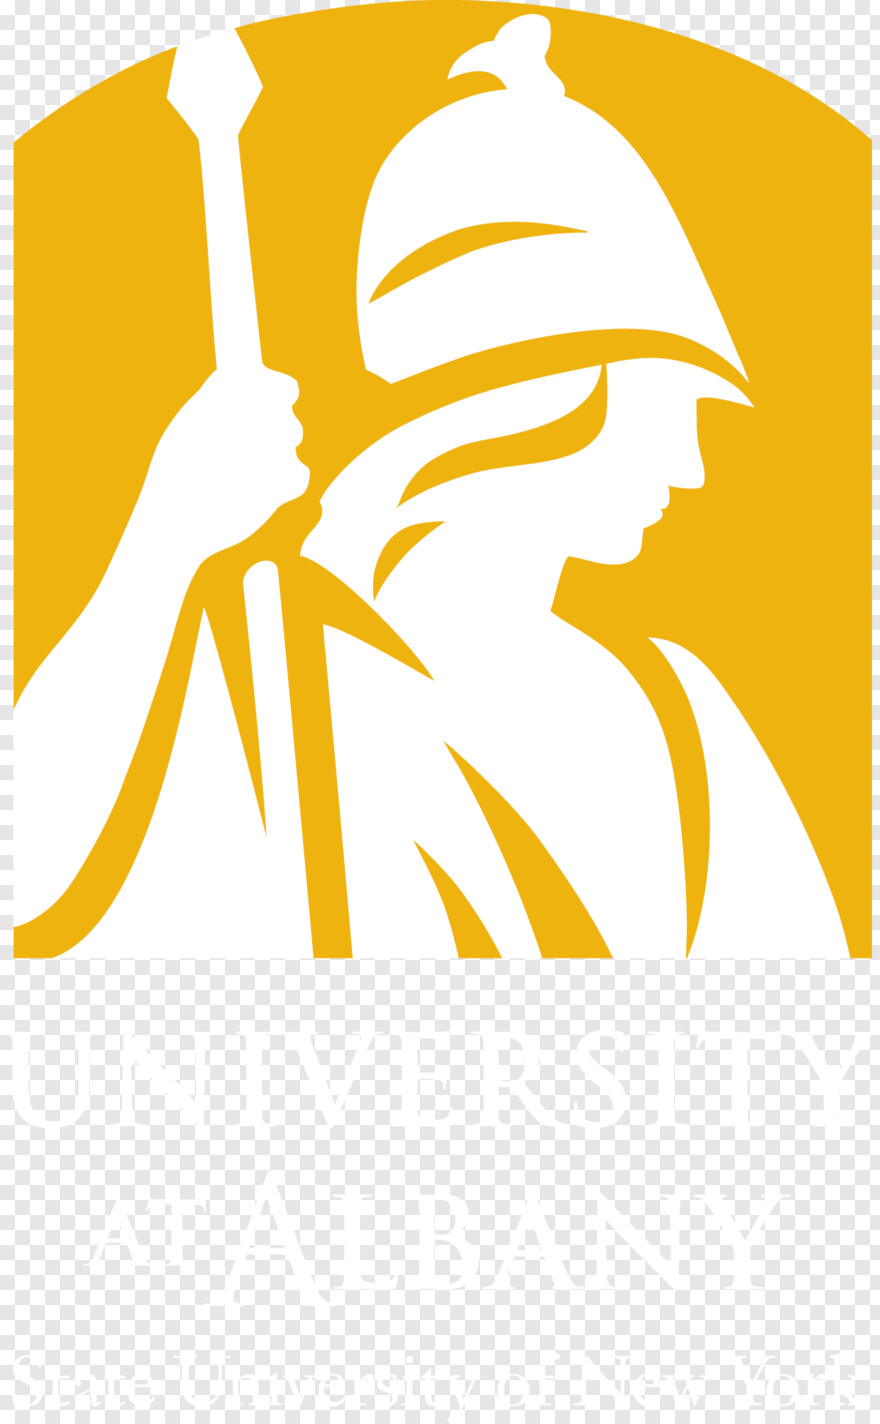 university-of-arizona-logo # 596101